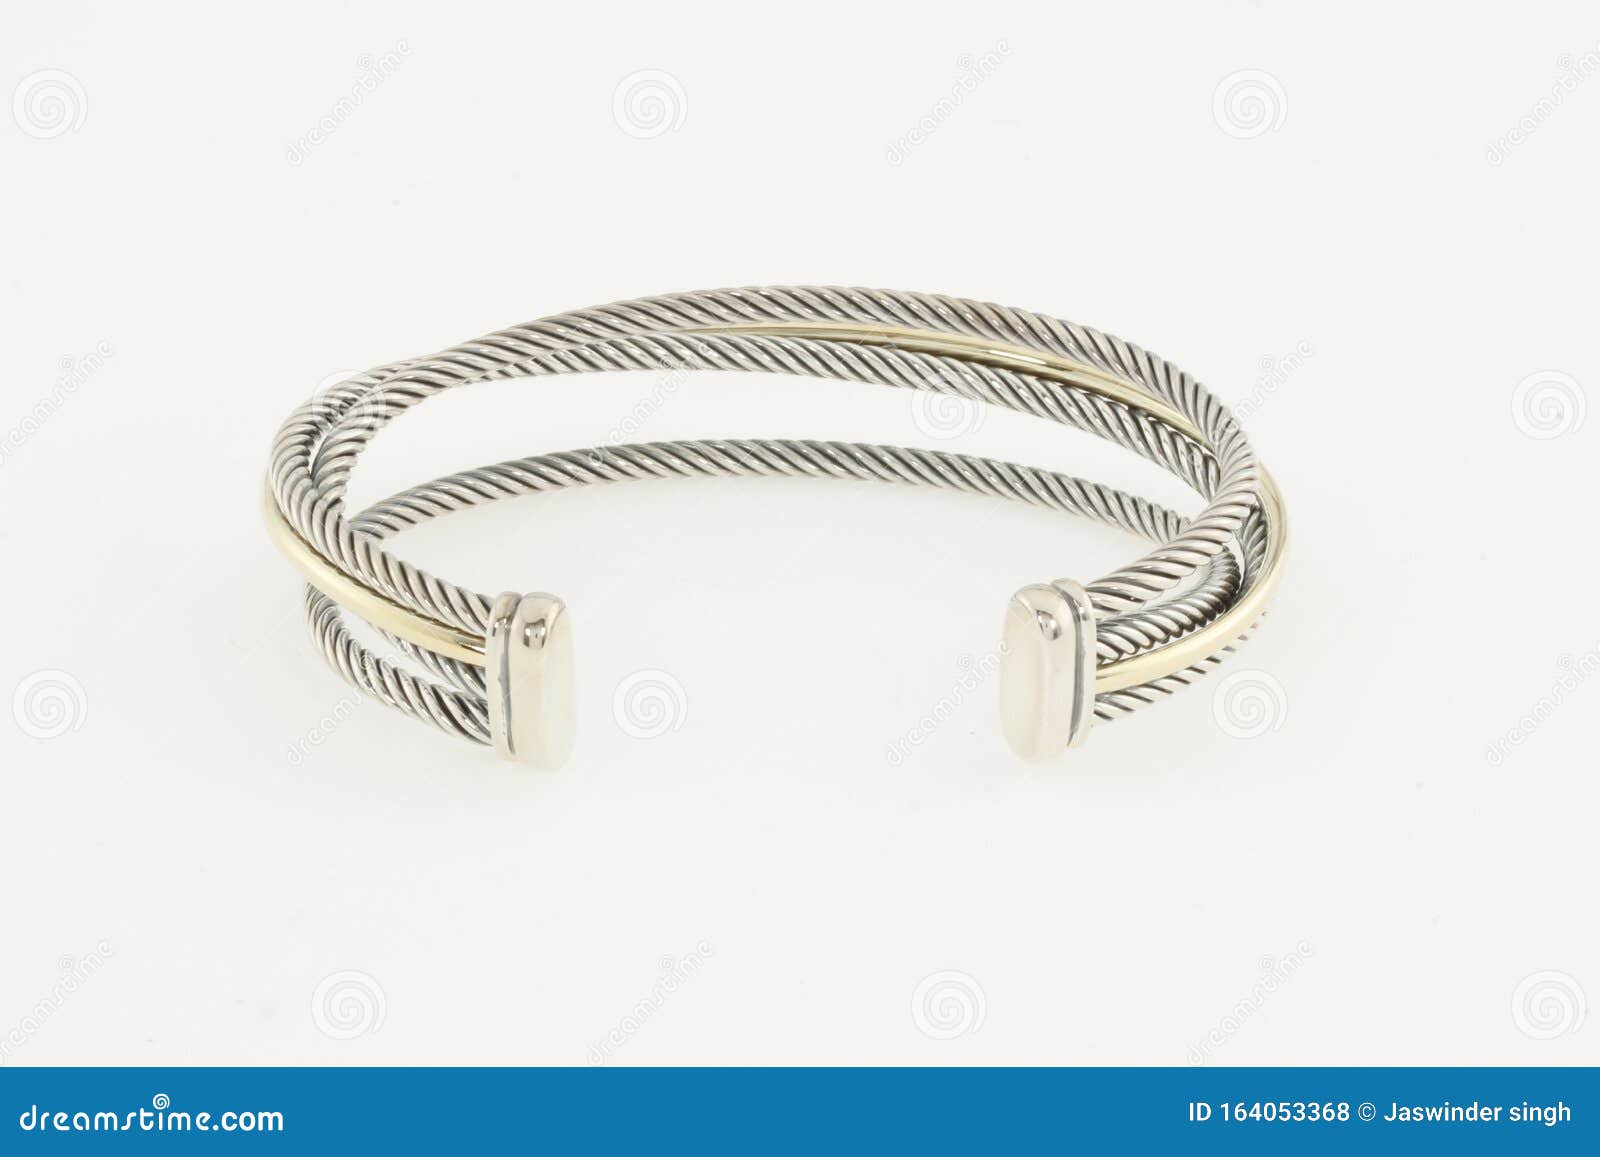 El Regalo Stainless Steel Bracelet Rakhi for Brother Rakhi for  Rakshabandhan Rakhi for Bhai (Silver Tone Chain Bracelet) : Amazon.in:  Fashion